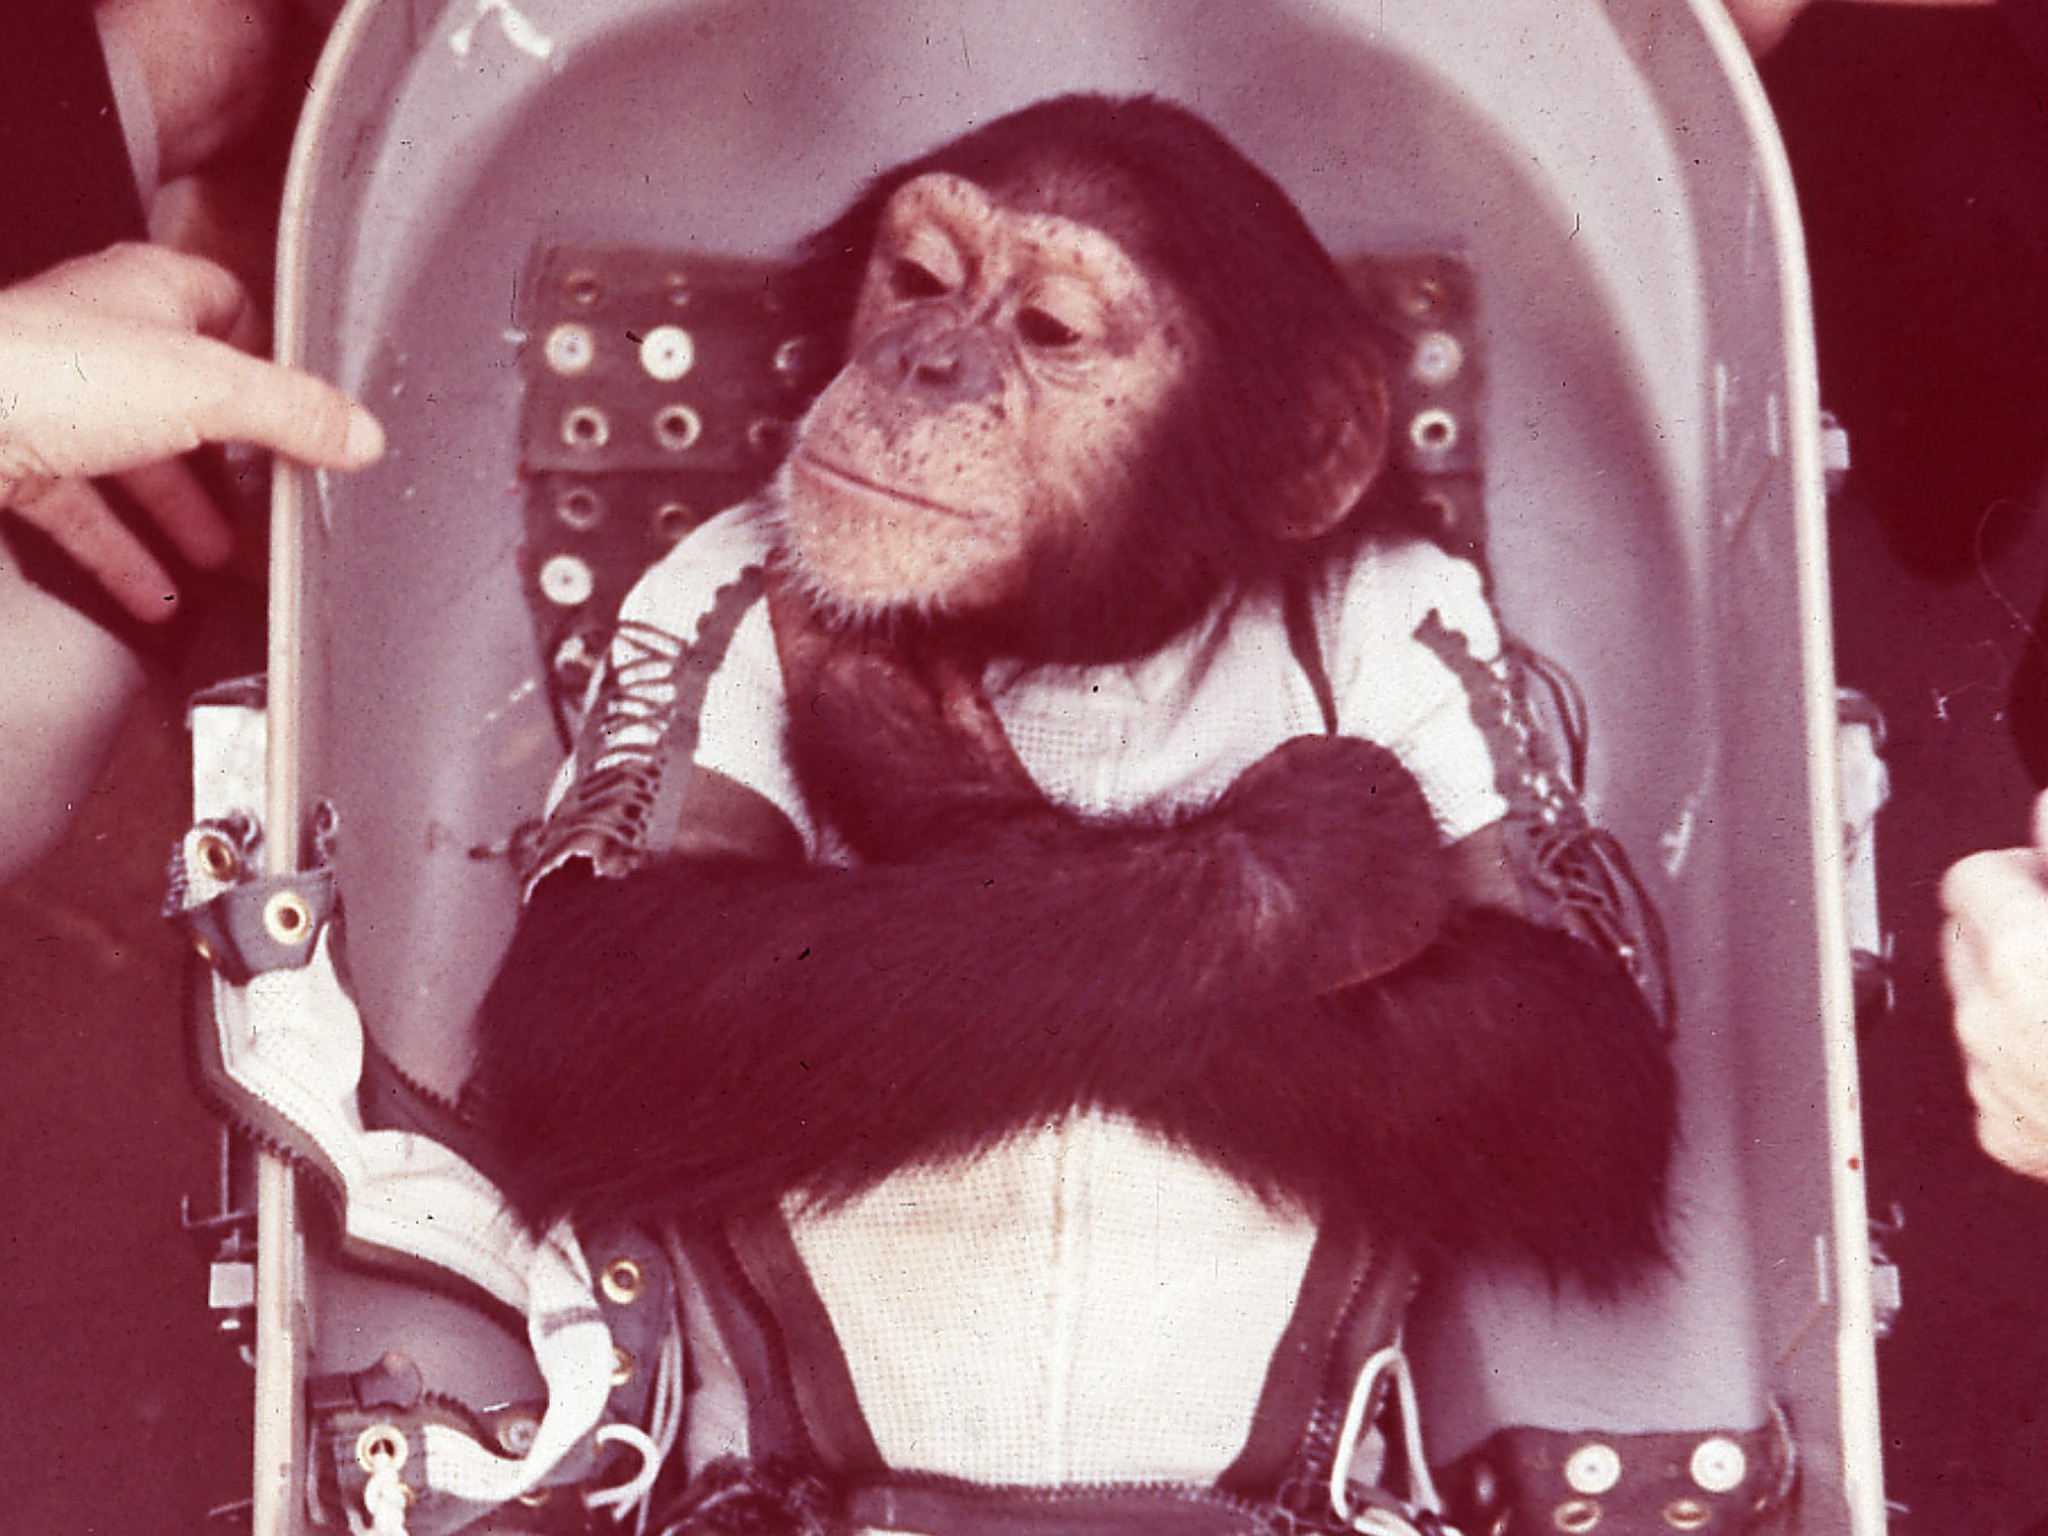 Первая обезьяна полетевшая в космос. Шимпанзе Хэм космонавт. Обезьяны Эйбл и Мисс Бейкер в космосе.